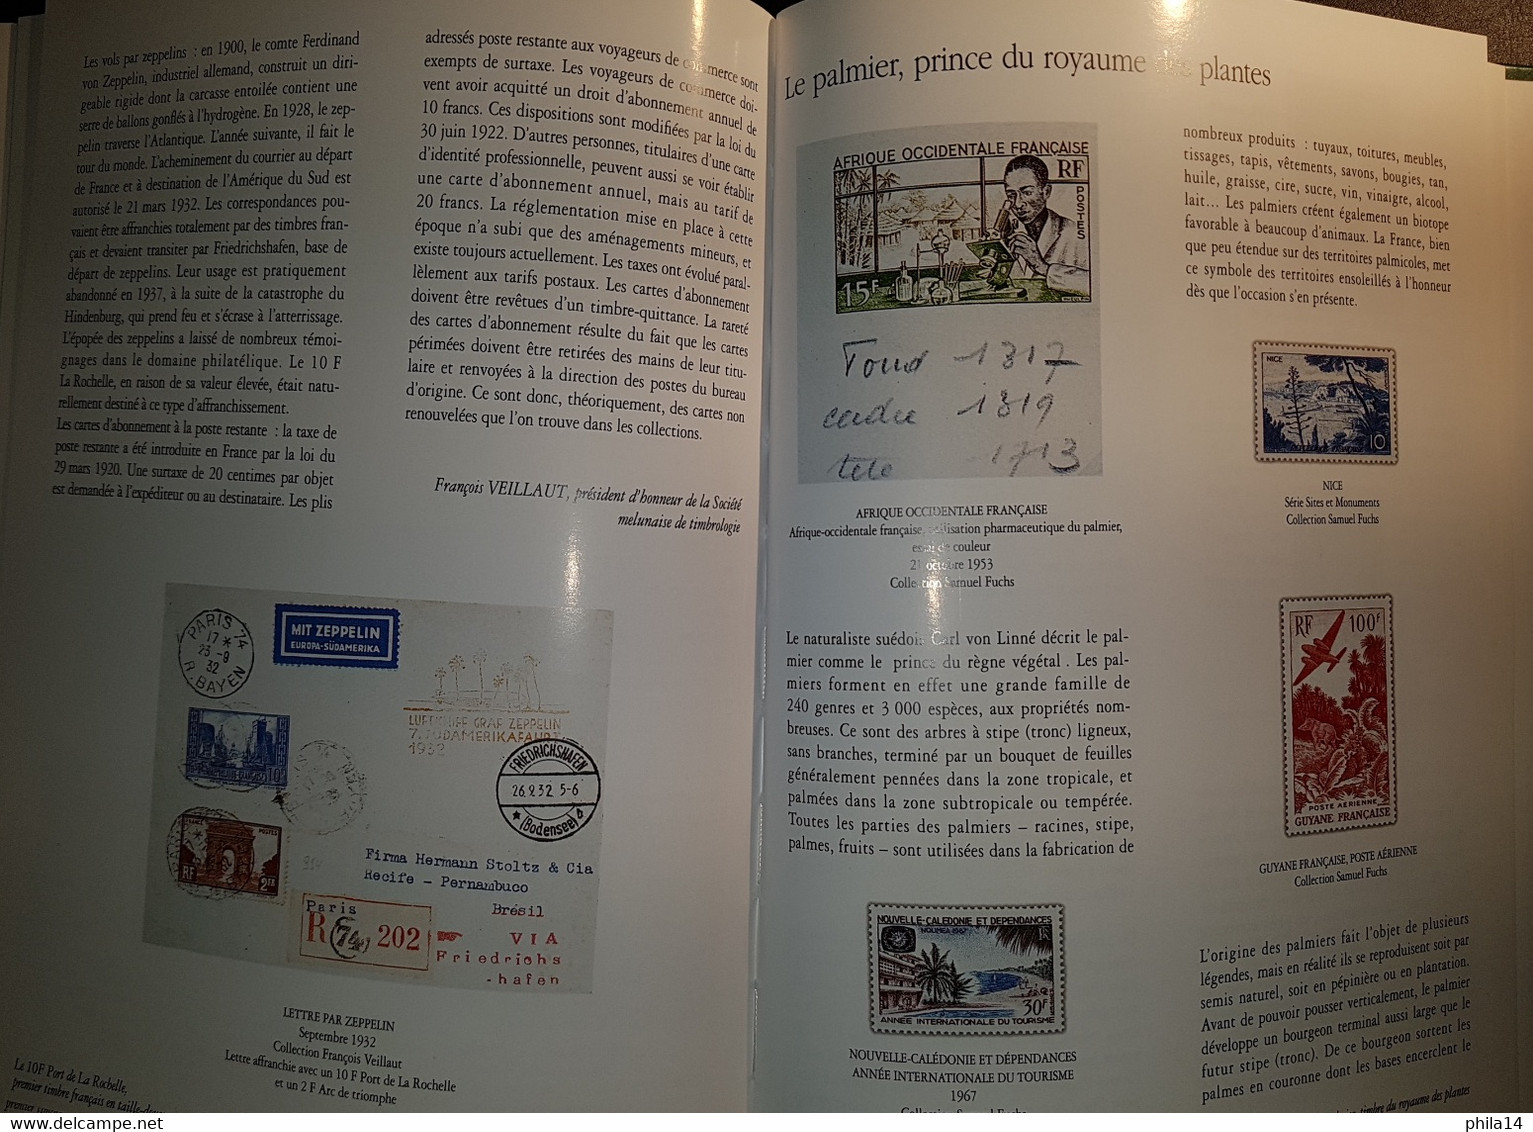 LE PATRIMOINE DU TIMBRE POSTE FRANCAIS VOL 2 / FLOHIC EDITIONS / 1277 PAGES